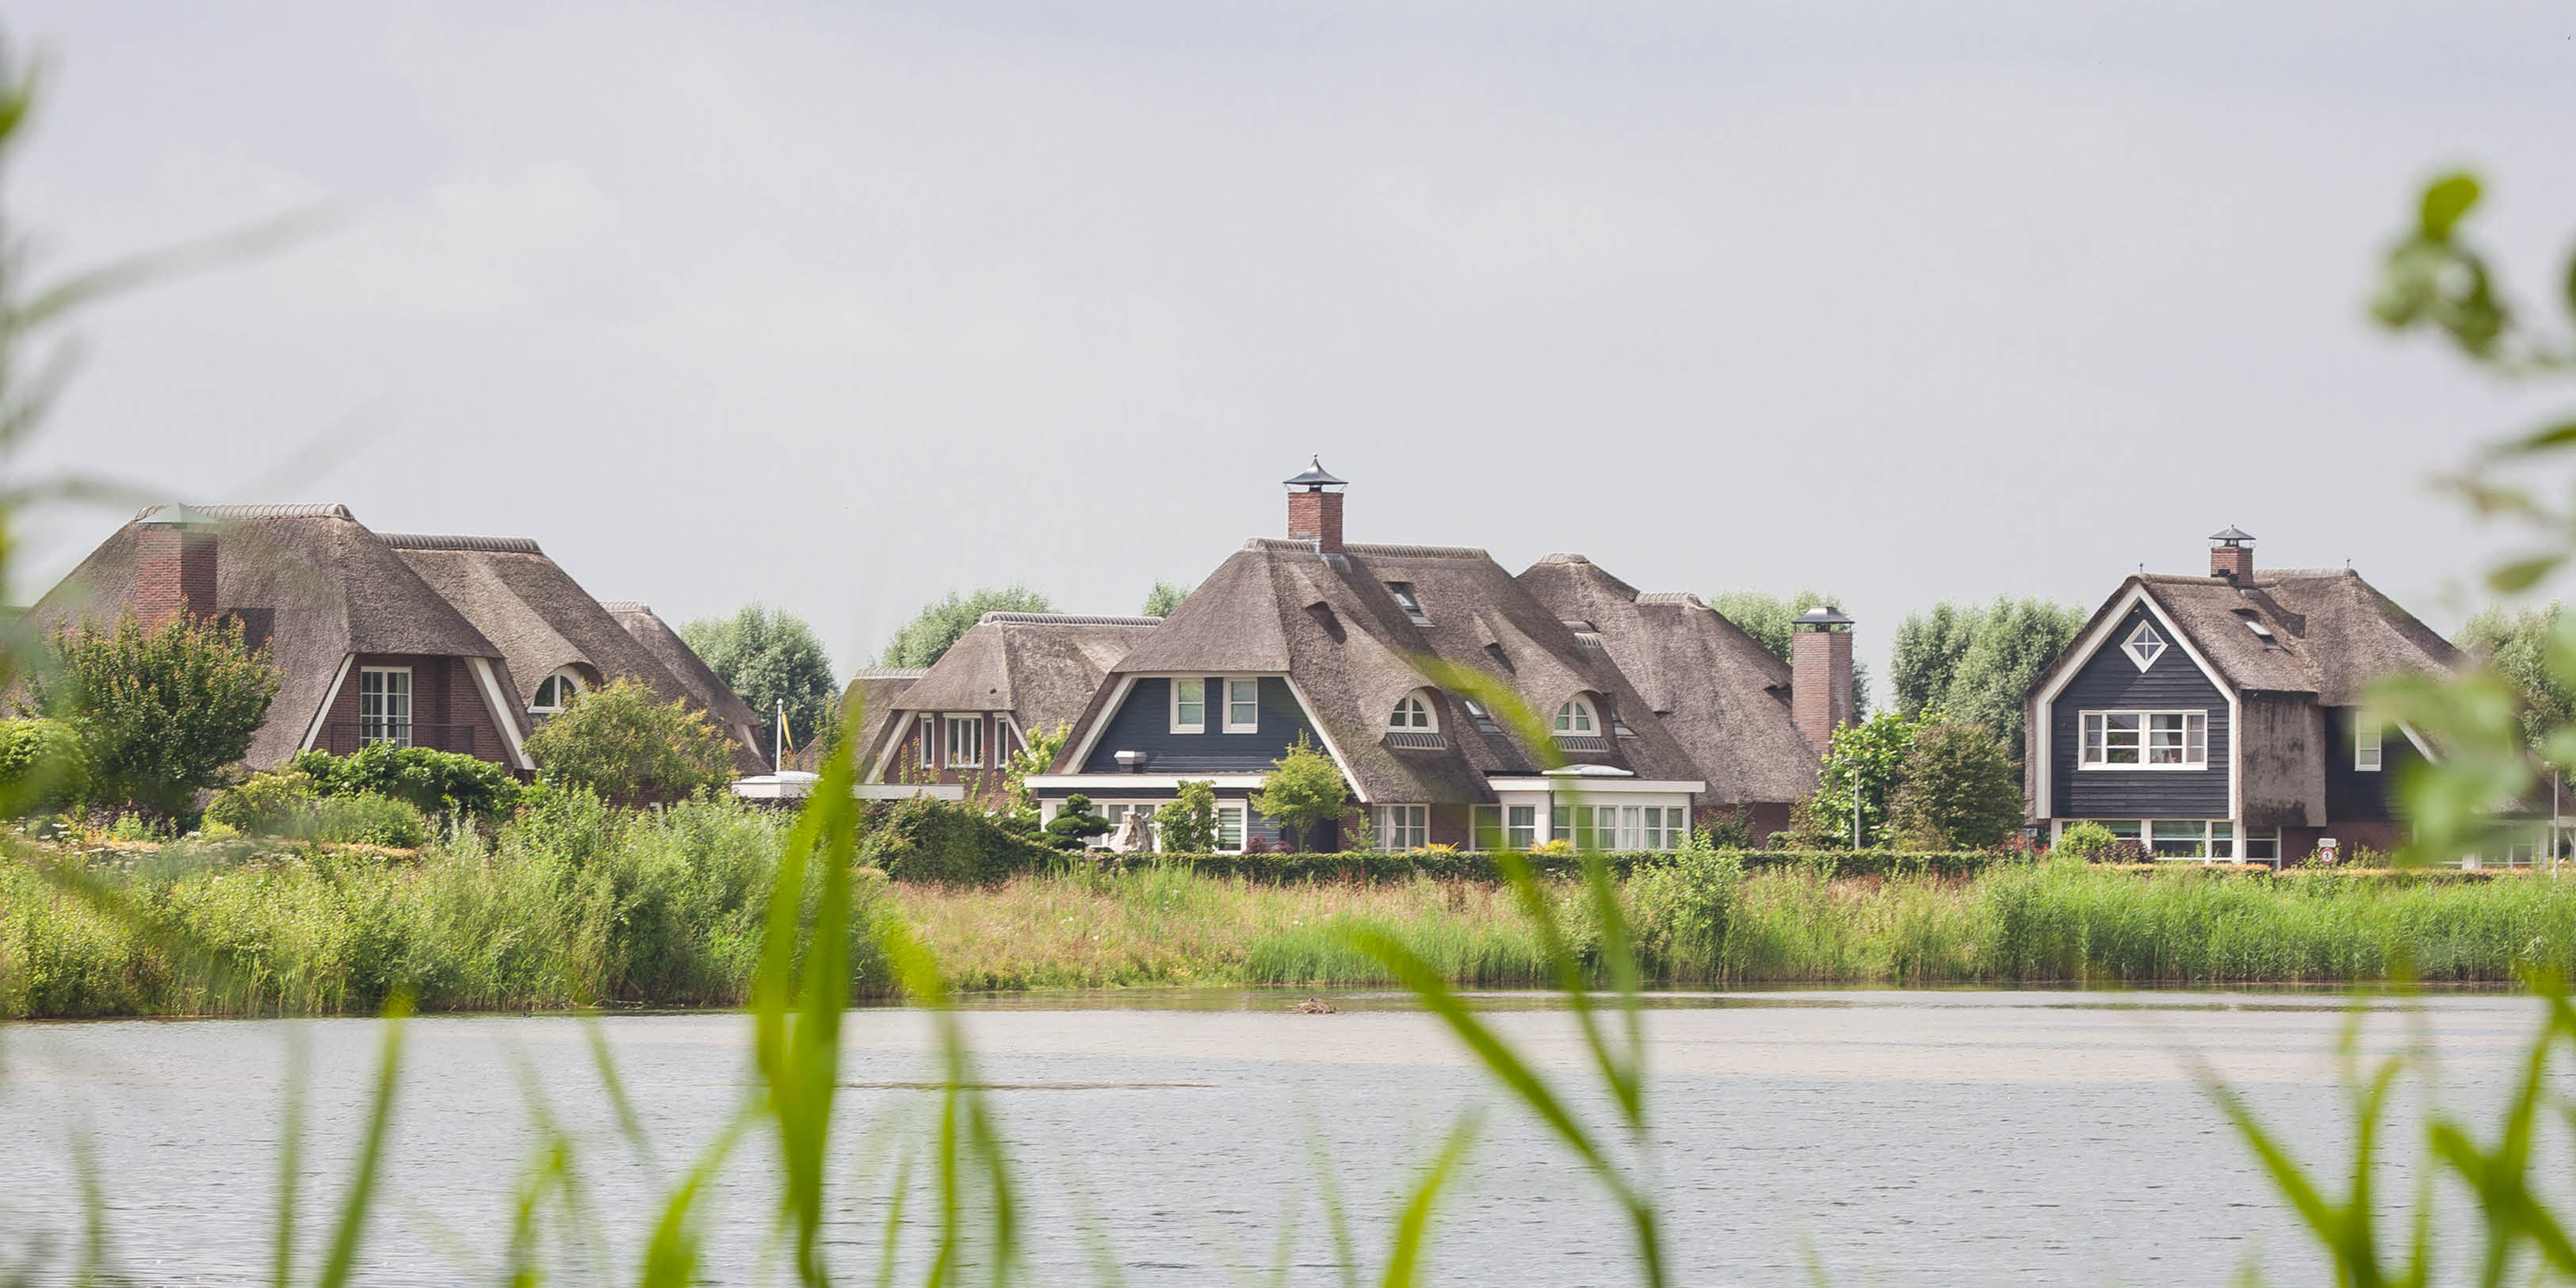 Buurt in beeld - Riethorst - Villa's met uitzicht over water 